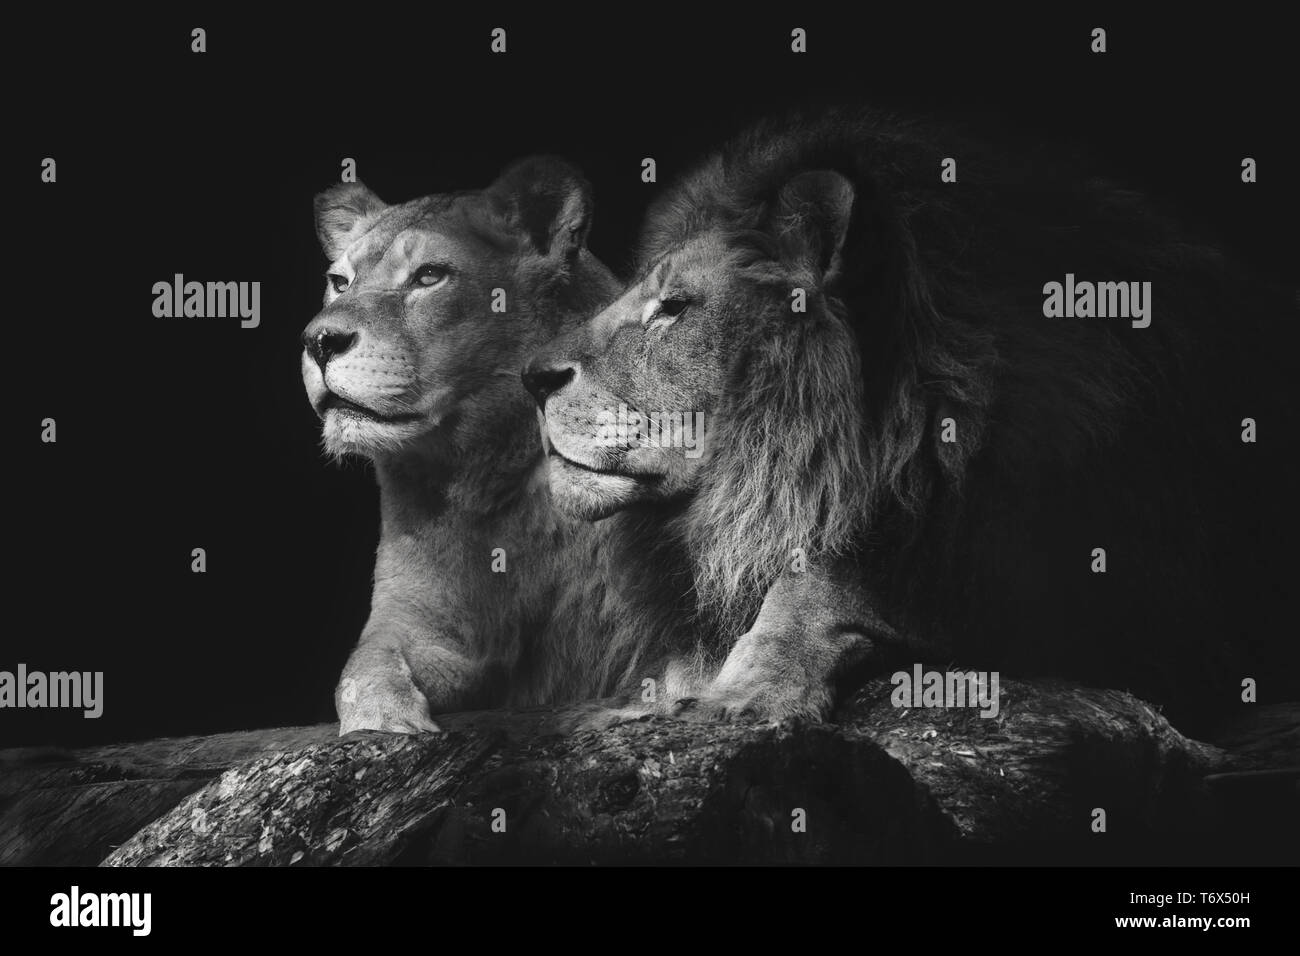 Retrato de una pareja de leones sentados cerca en un fondo negro aislado. León macho hembra husmeadores. Foto de stock